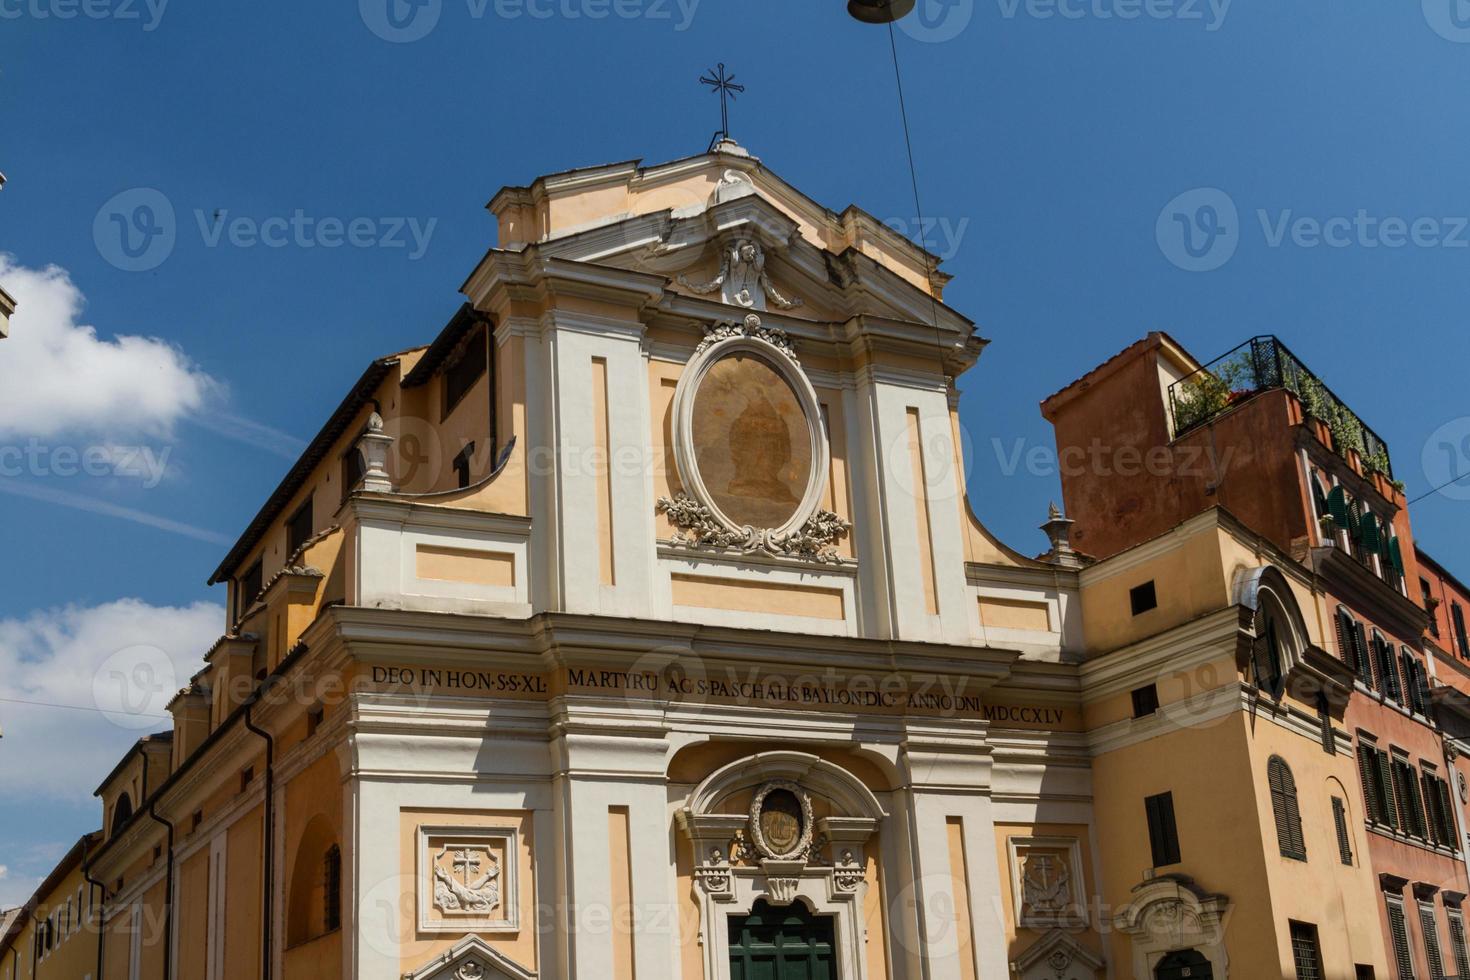 grote kerk in het centrum van Rome, Italië. foto